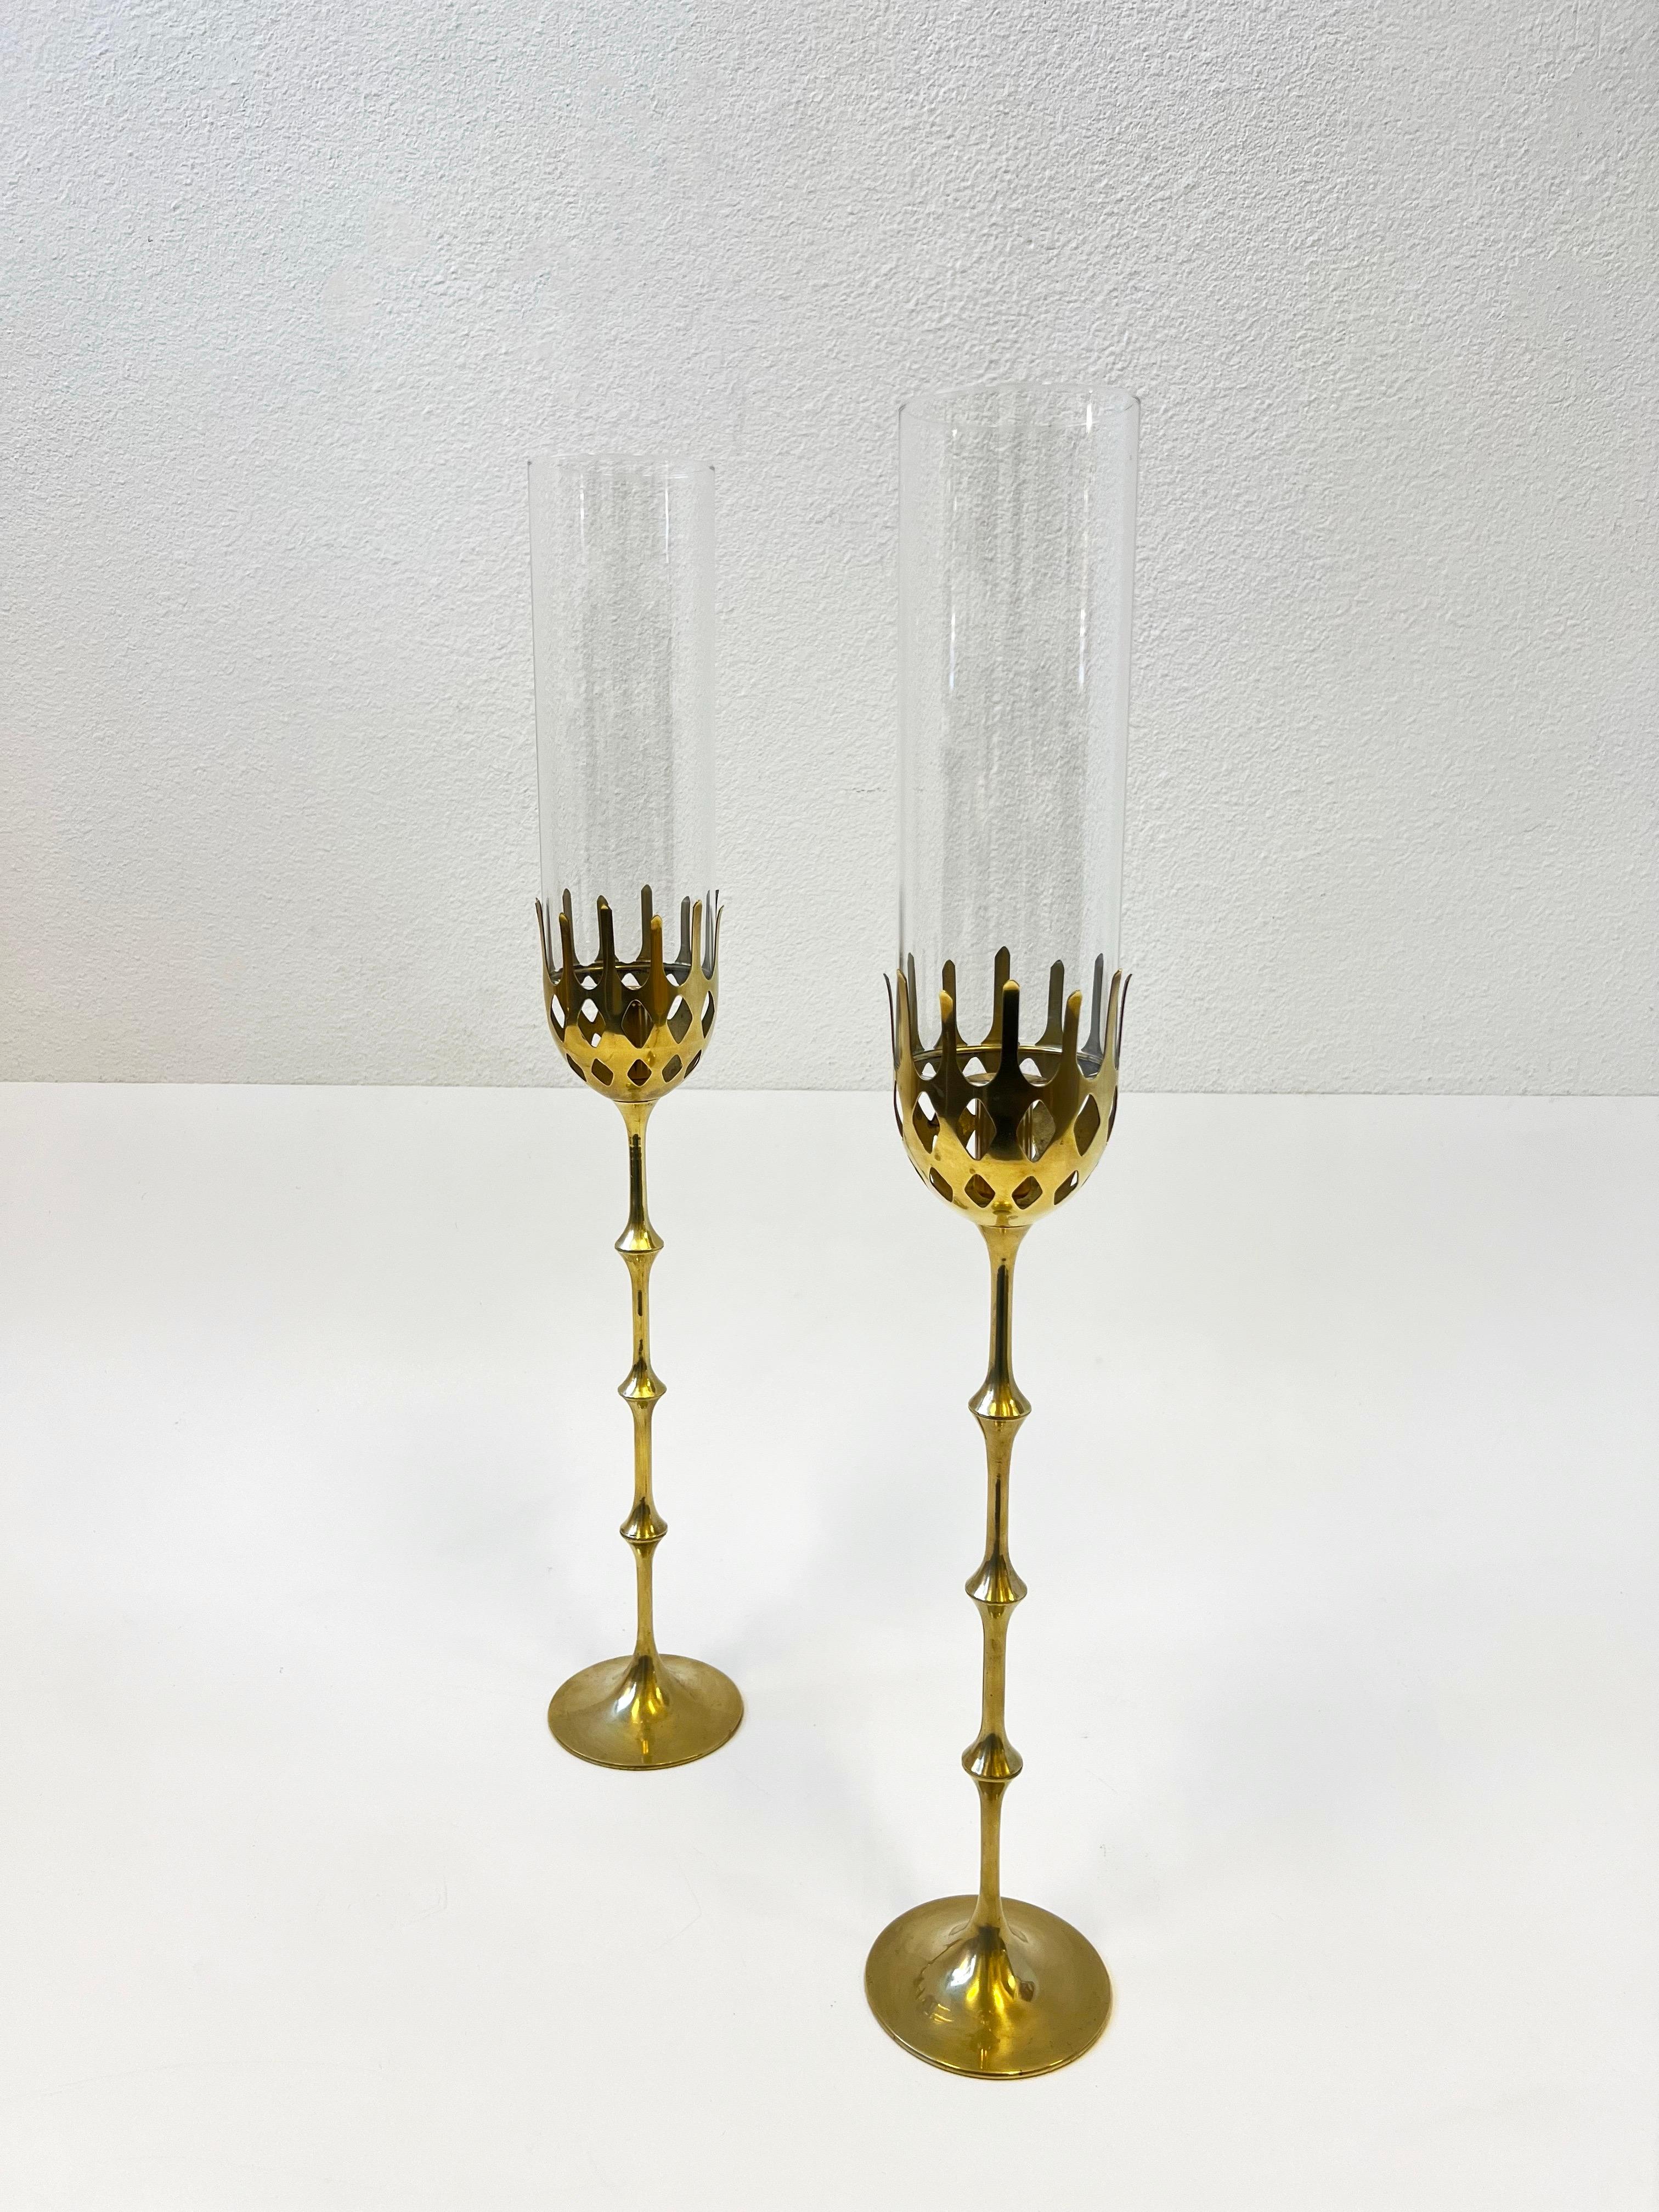 1970er Jahre Ein Paar Kerzenhalter aus massivem Messing und Glas von Bijørn Wiinblad für Bambercer. 
Sie sind mit Exclusiv für Bambercer gekennzeichnet. 
Neue Glasschirme für Hurrikane. 
Das Messing ist nicht lackiert zeigt kleinere Abnutzung im